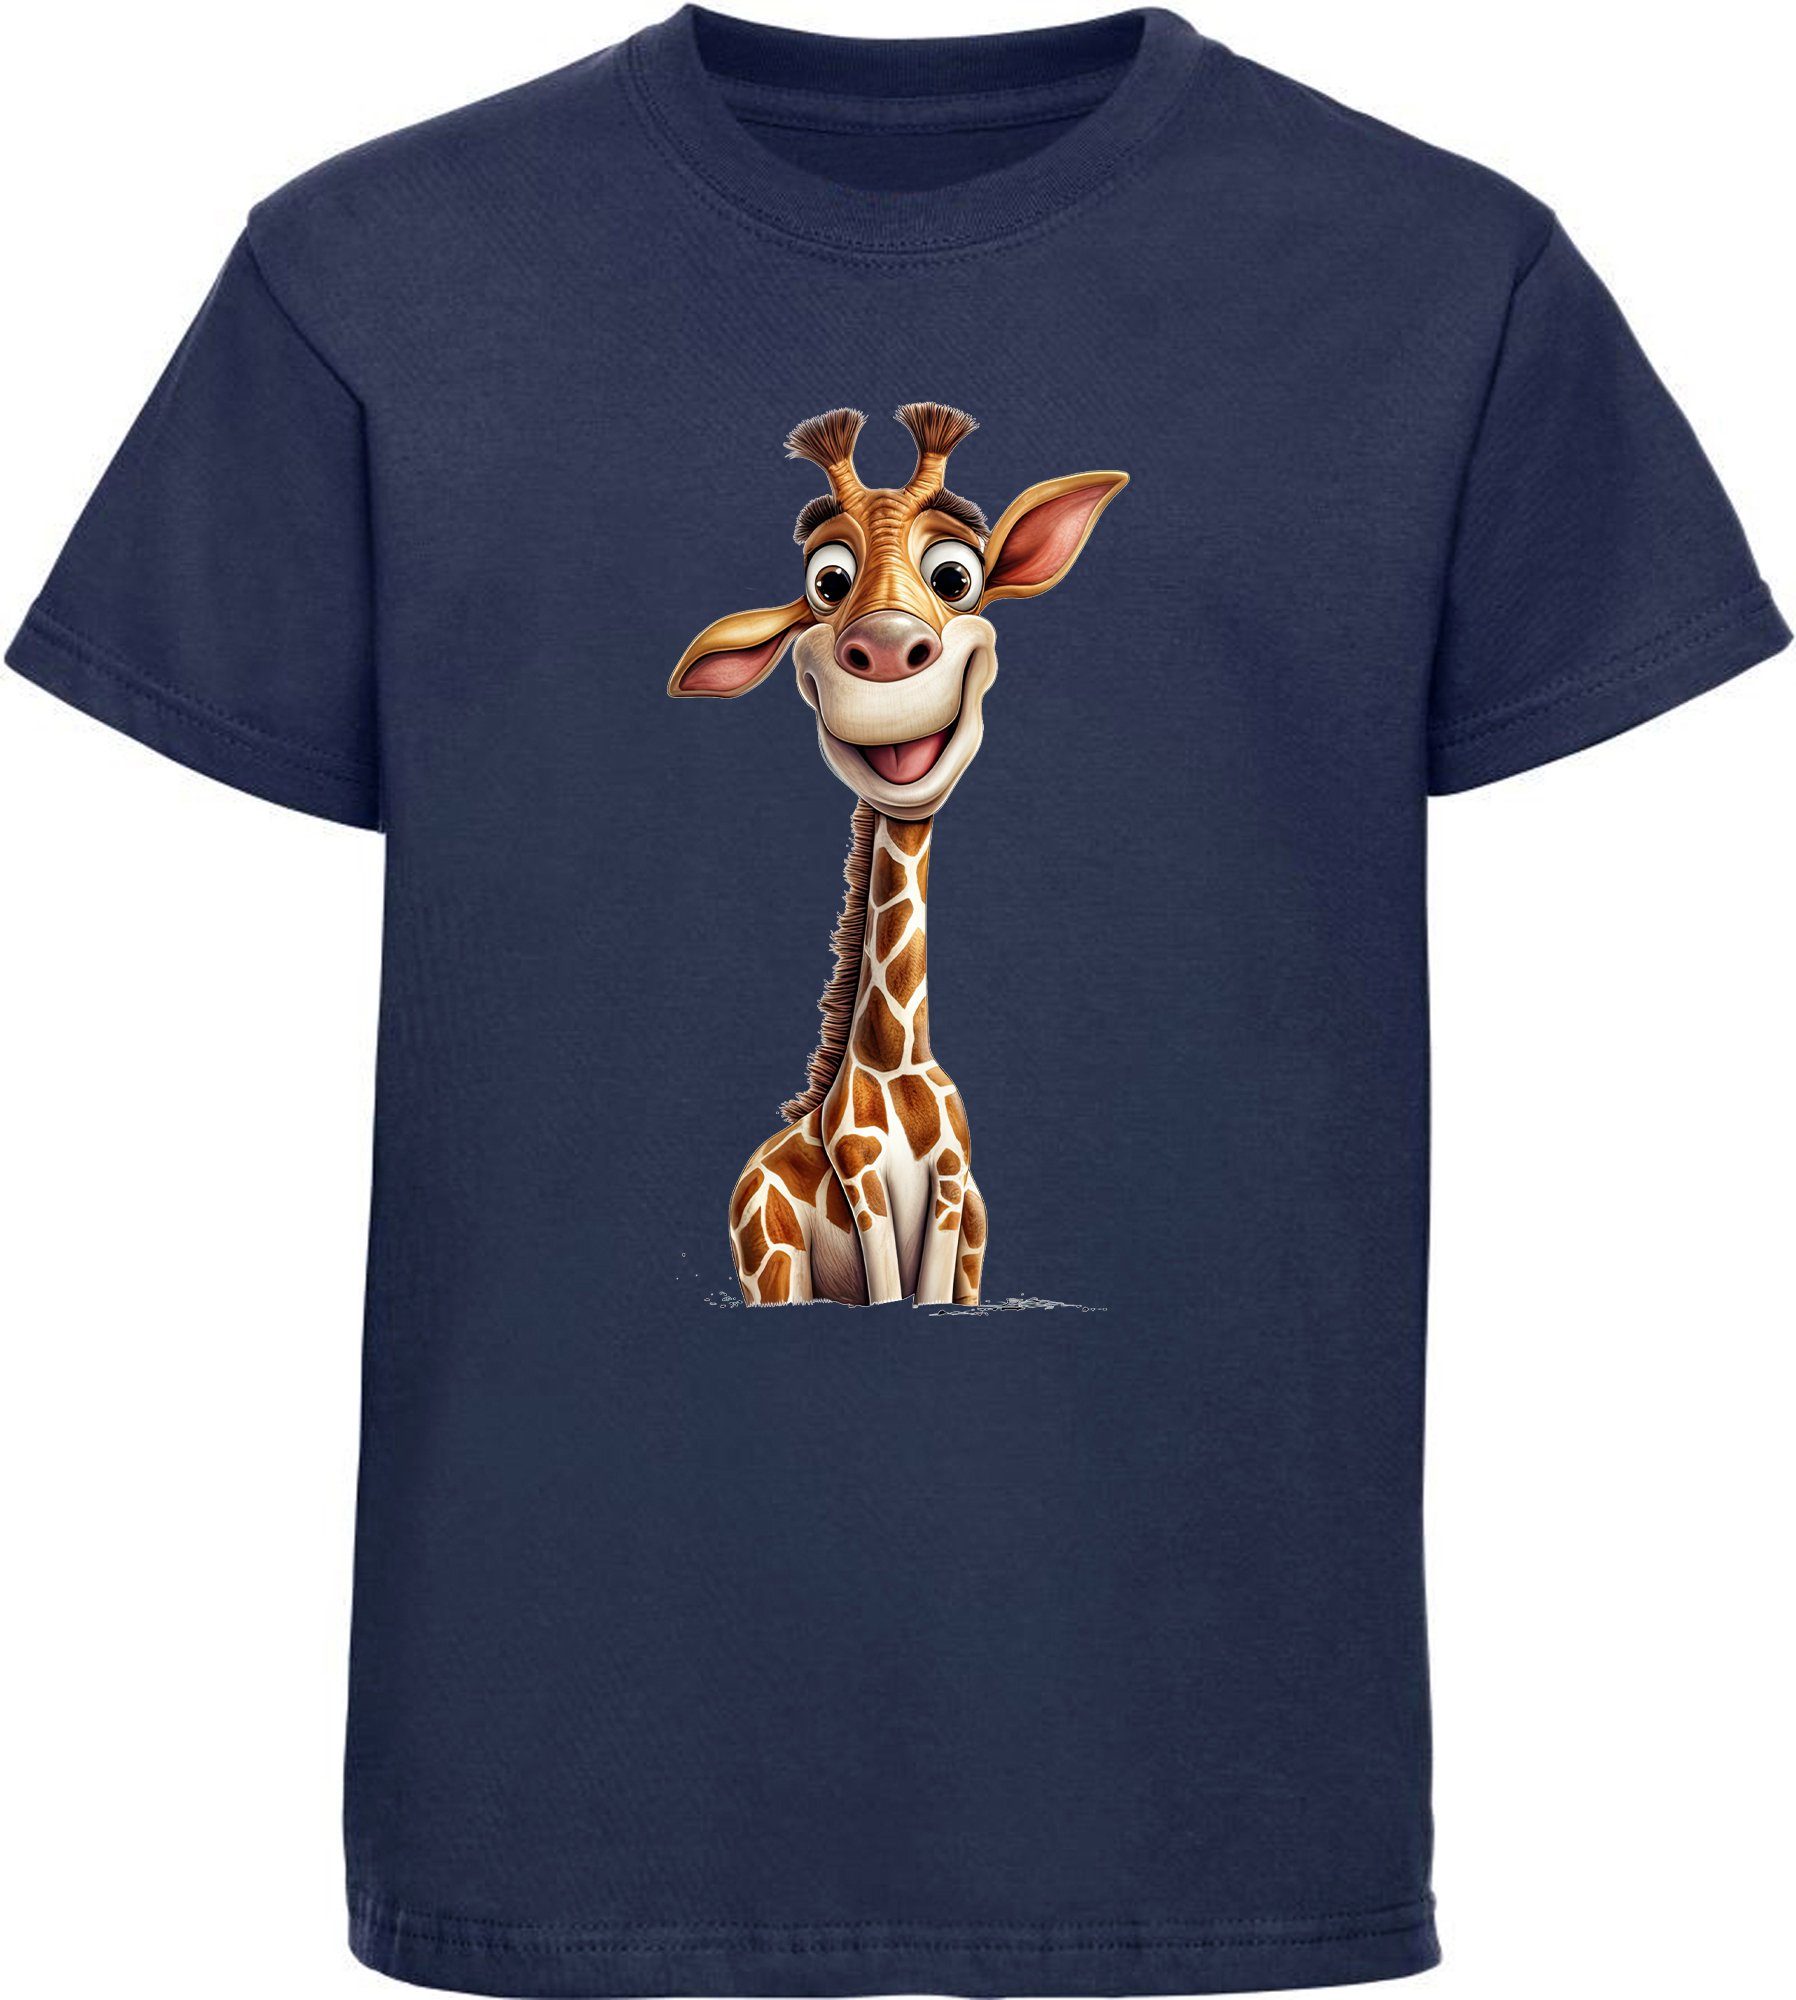 MyDesign24 T-Shirt Kinder Wildtier Print Shirt bedruckt - Baby Giraffe Baumwollshirt mit Aufdruck, i273 navy blau